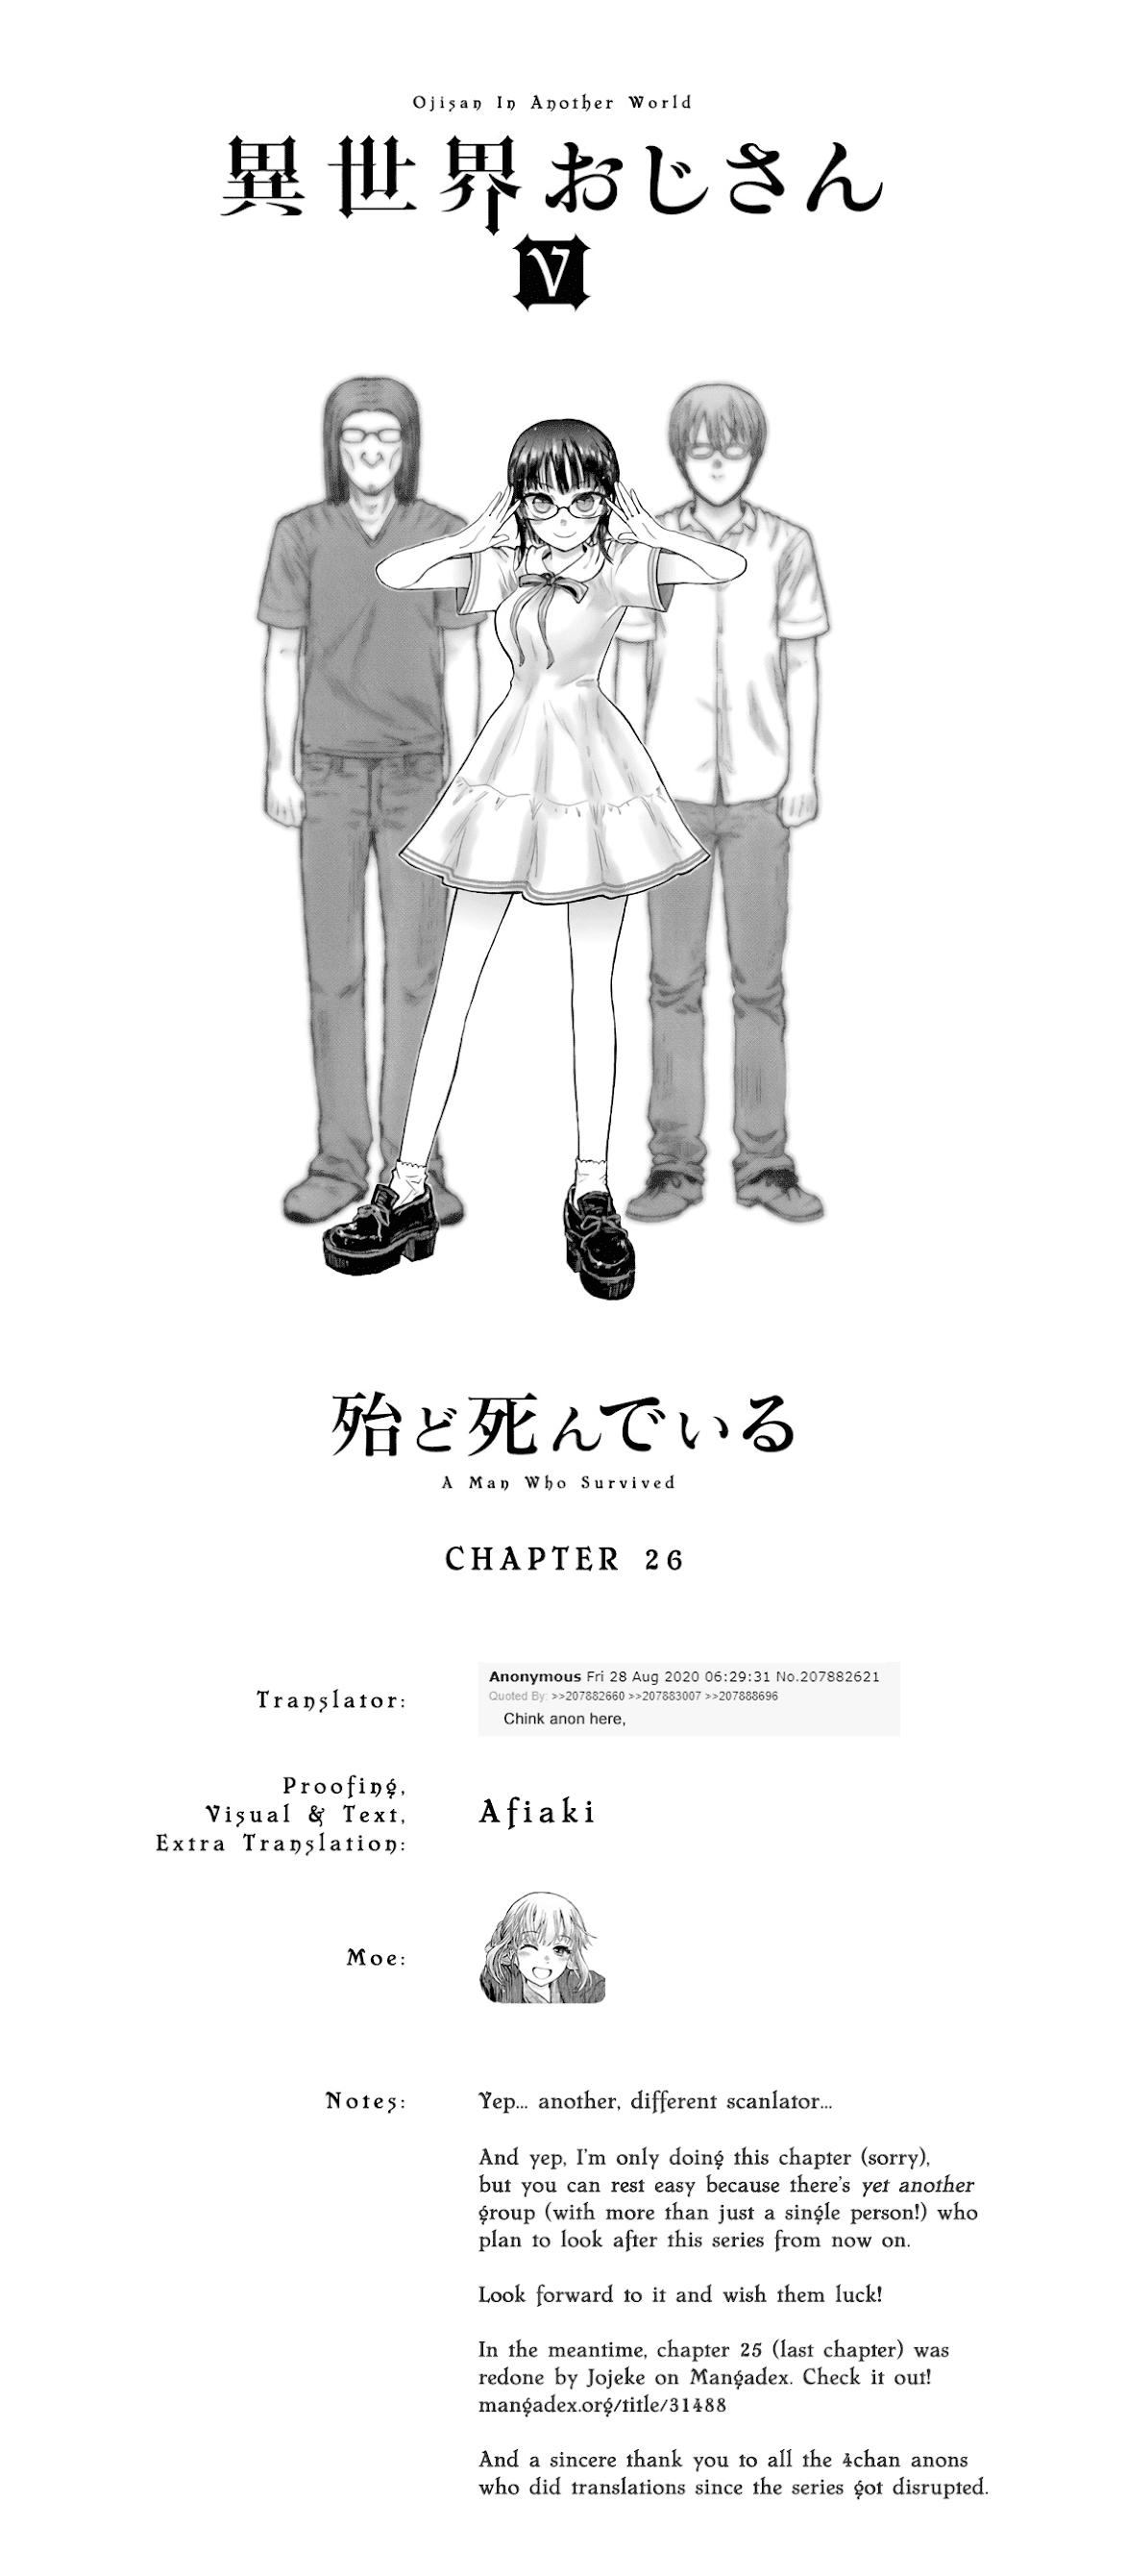 Read Isekai Ojisan Vol.6 Chapter 29 - Manganelo